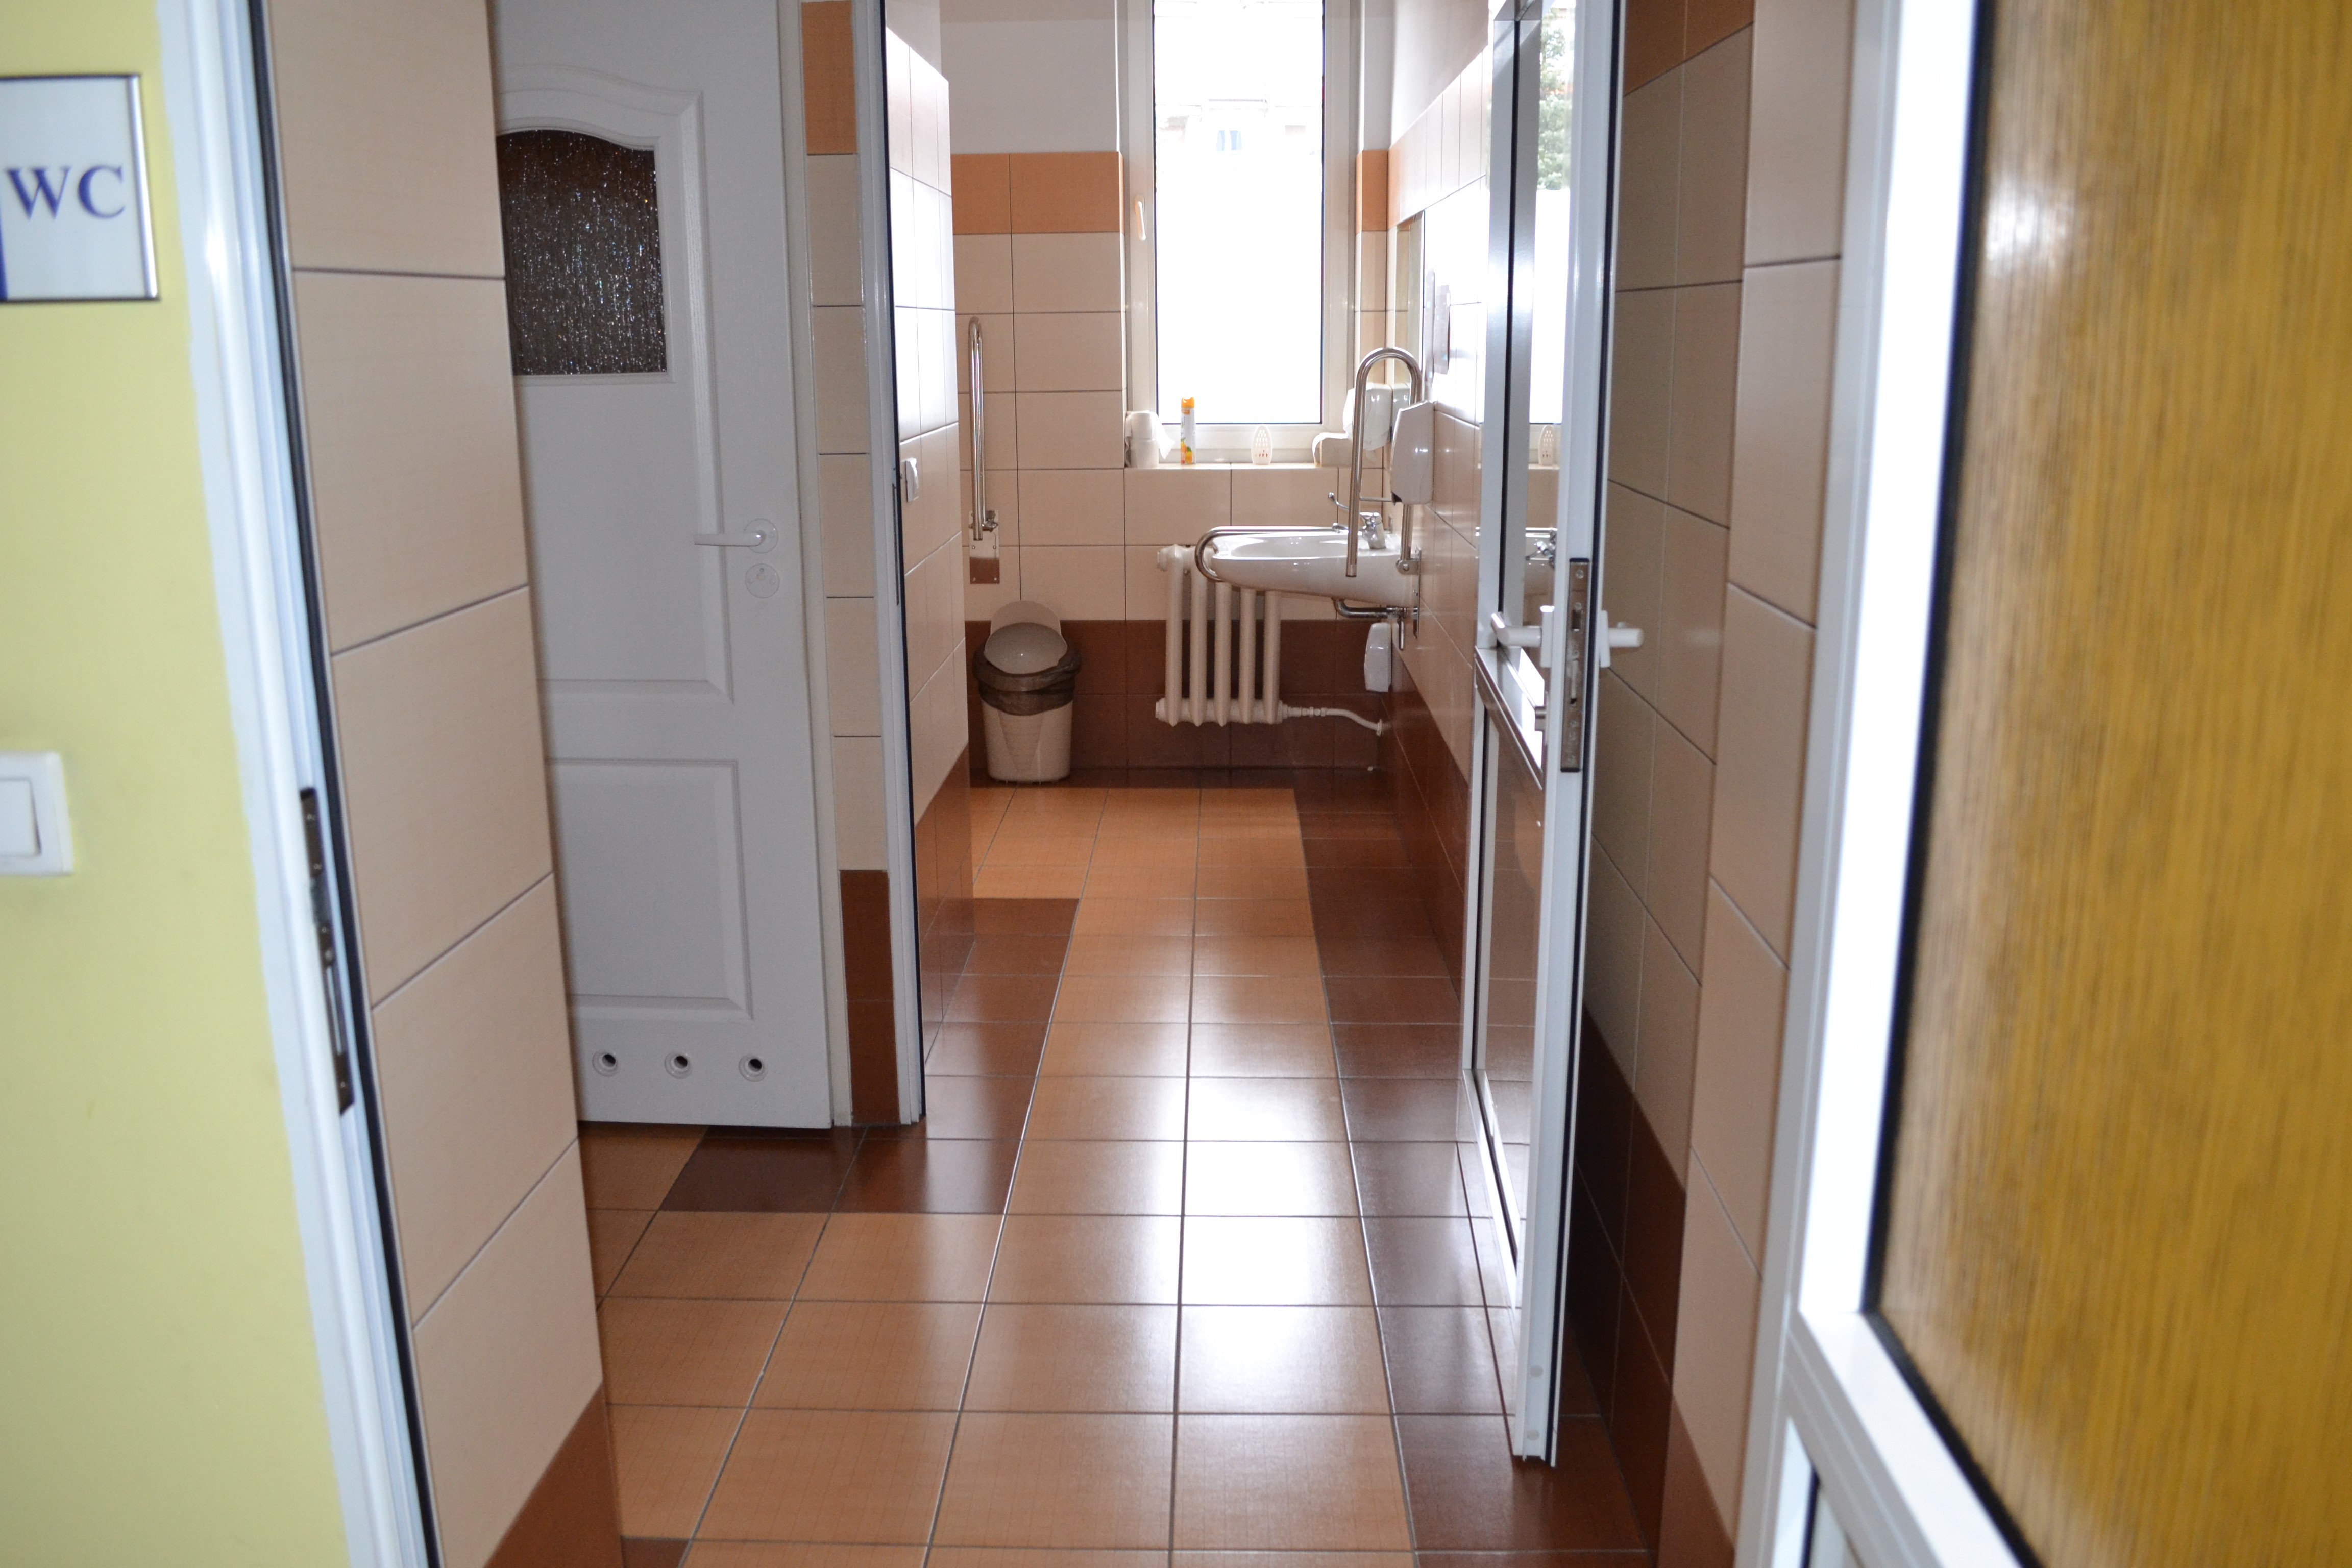 Toaleta z podłogą wyłożona brązowymi płytkami, po lewej stronie widoczne drzwi do kabiny, na wprost widoczne okno i umywalka z uchwytami po obu stronach.